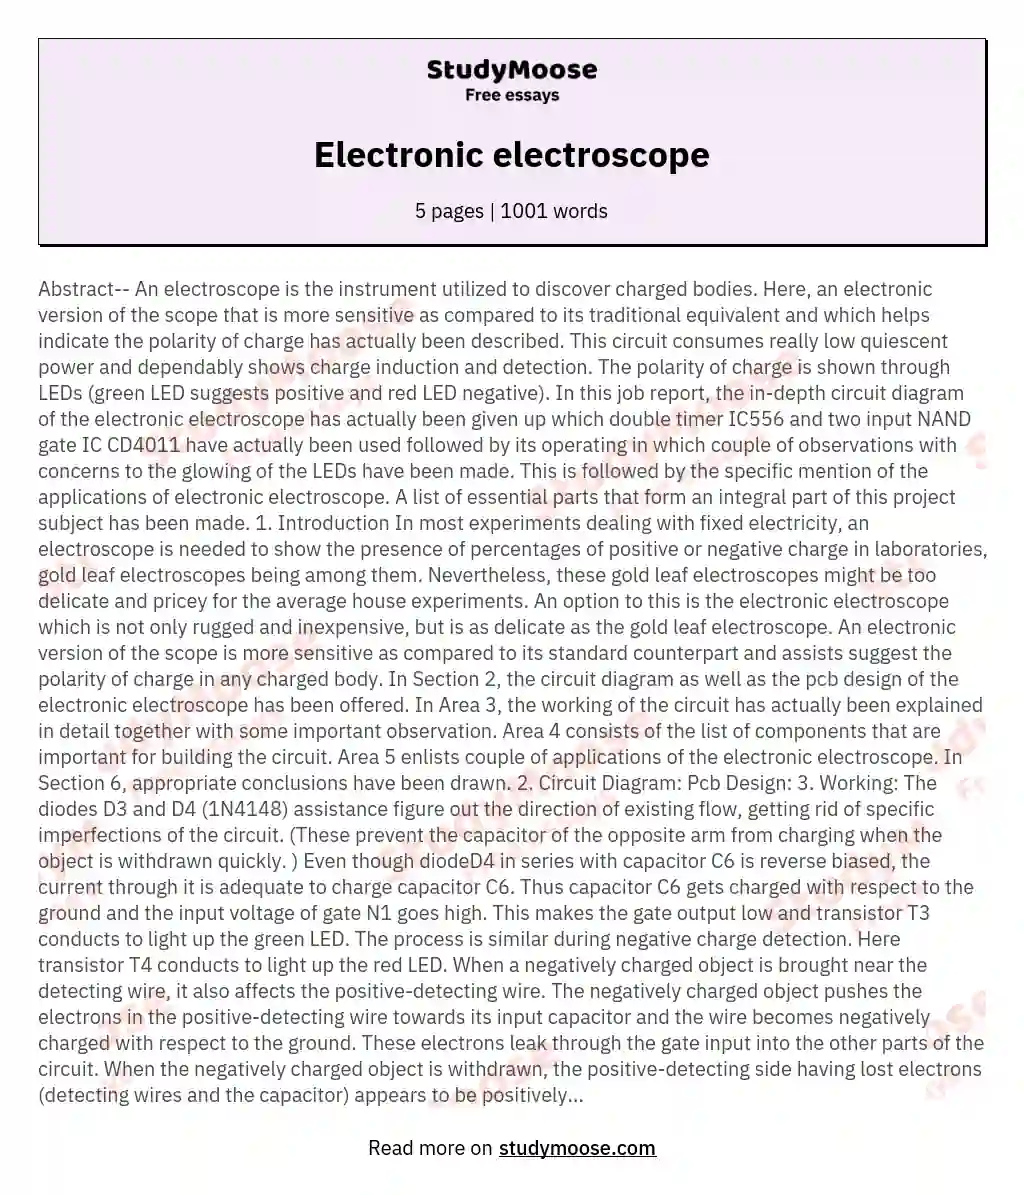 Electronic electroscope essay